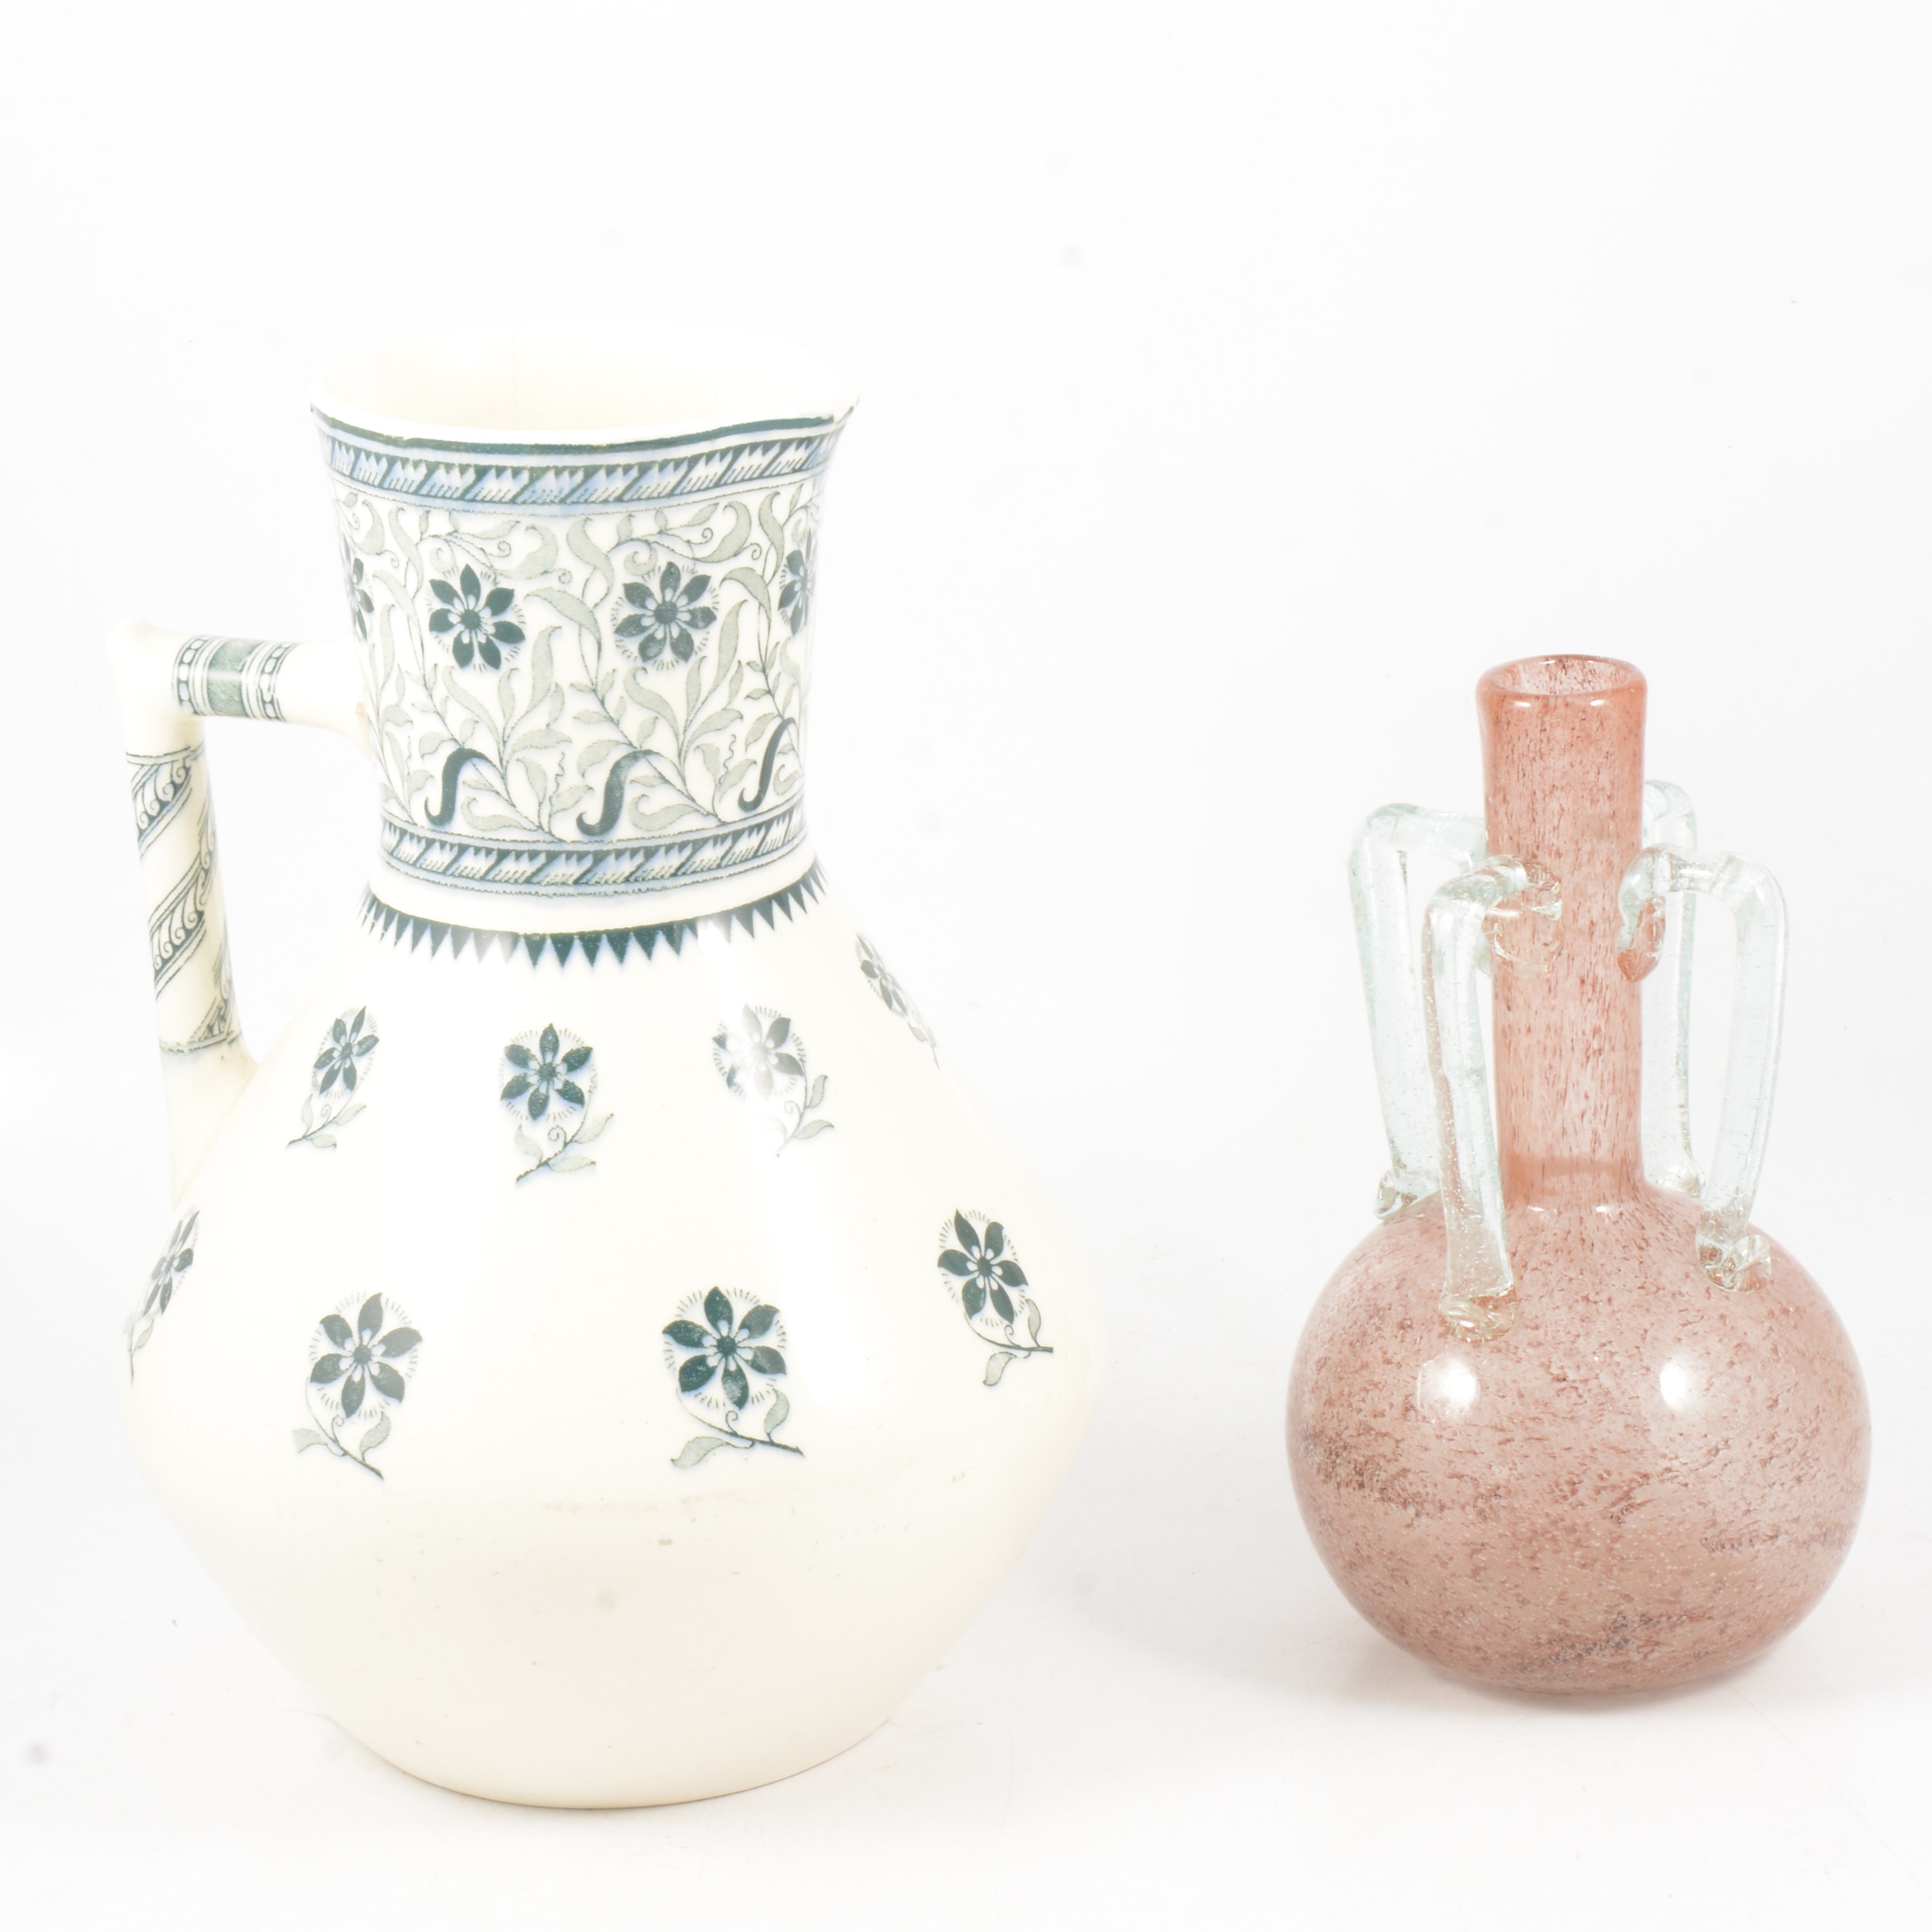 Christopher Dresser for Minton wash jug, and glass vase